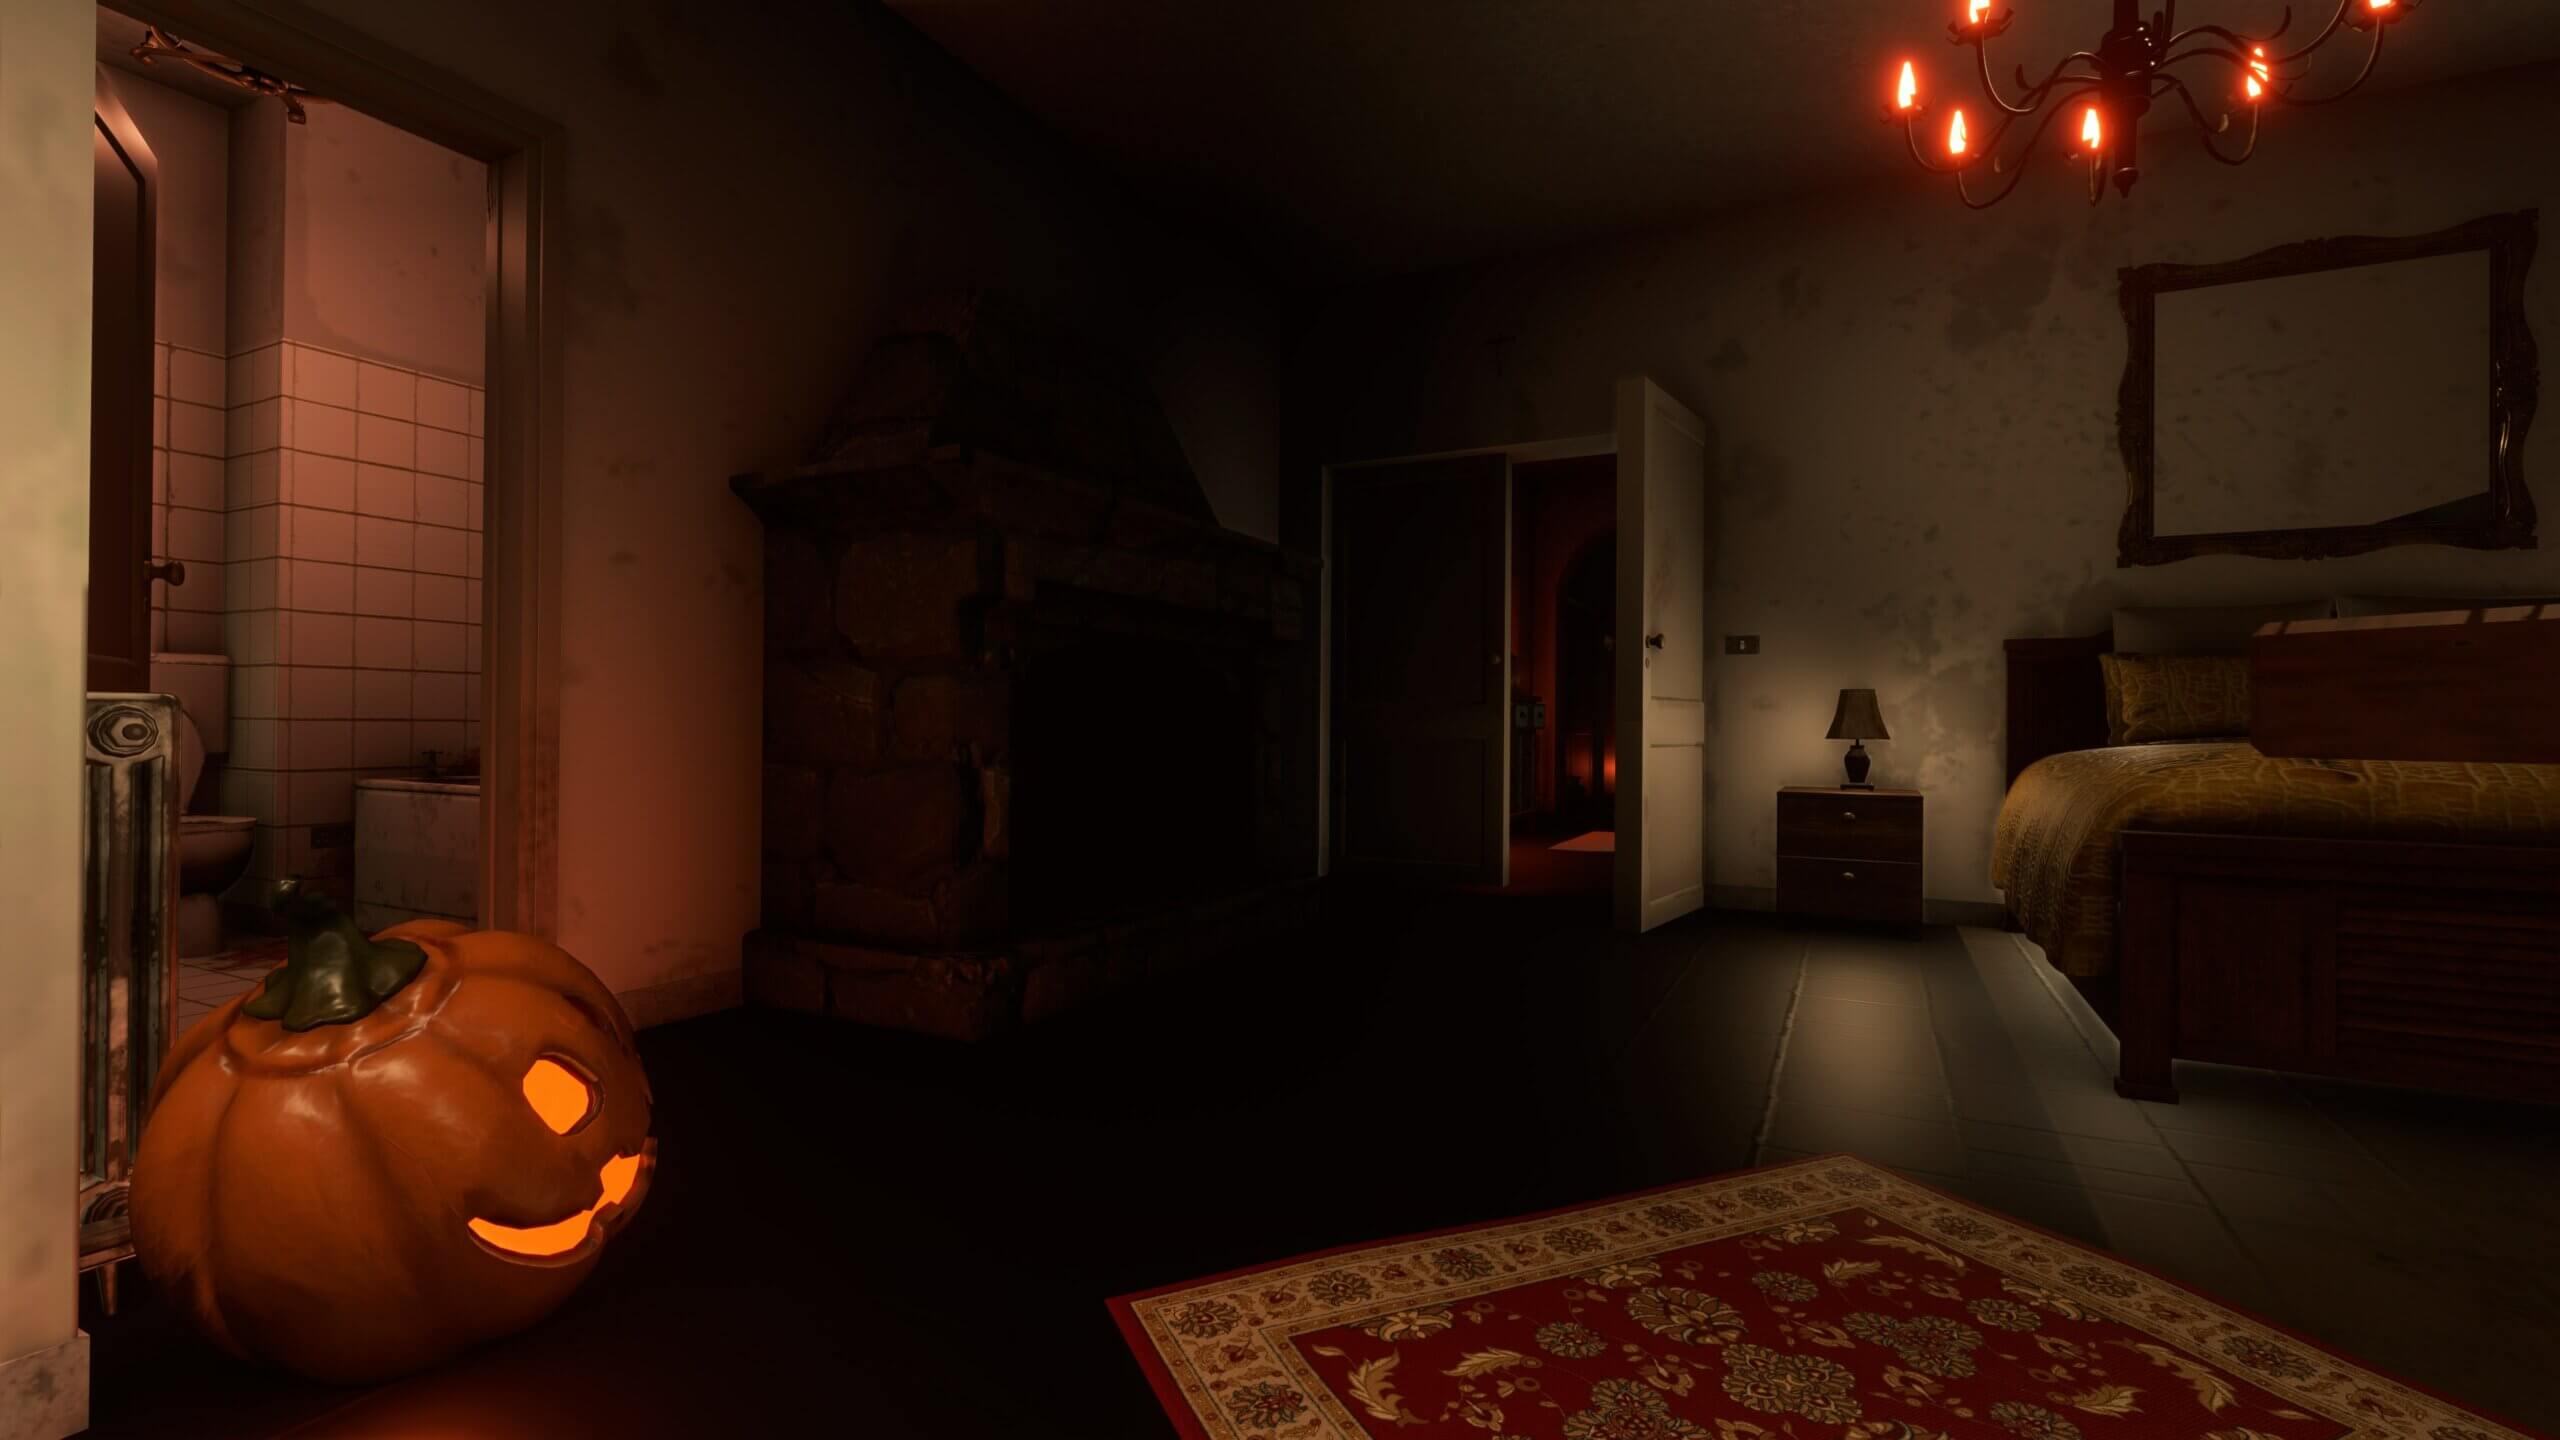 Spooky cabin